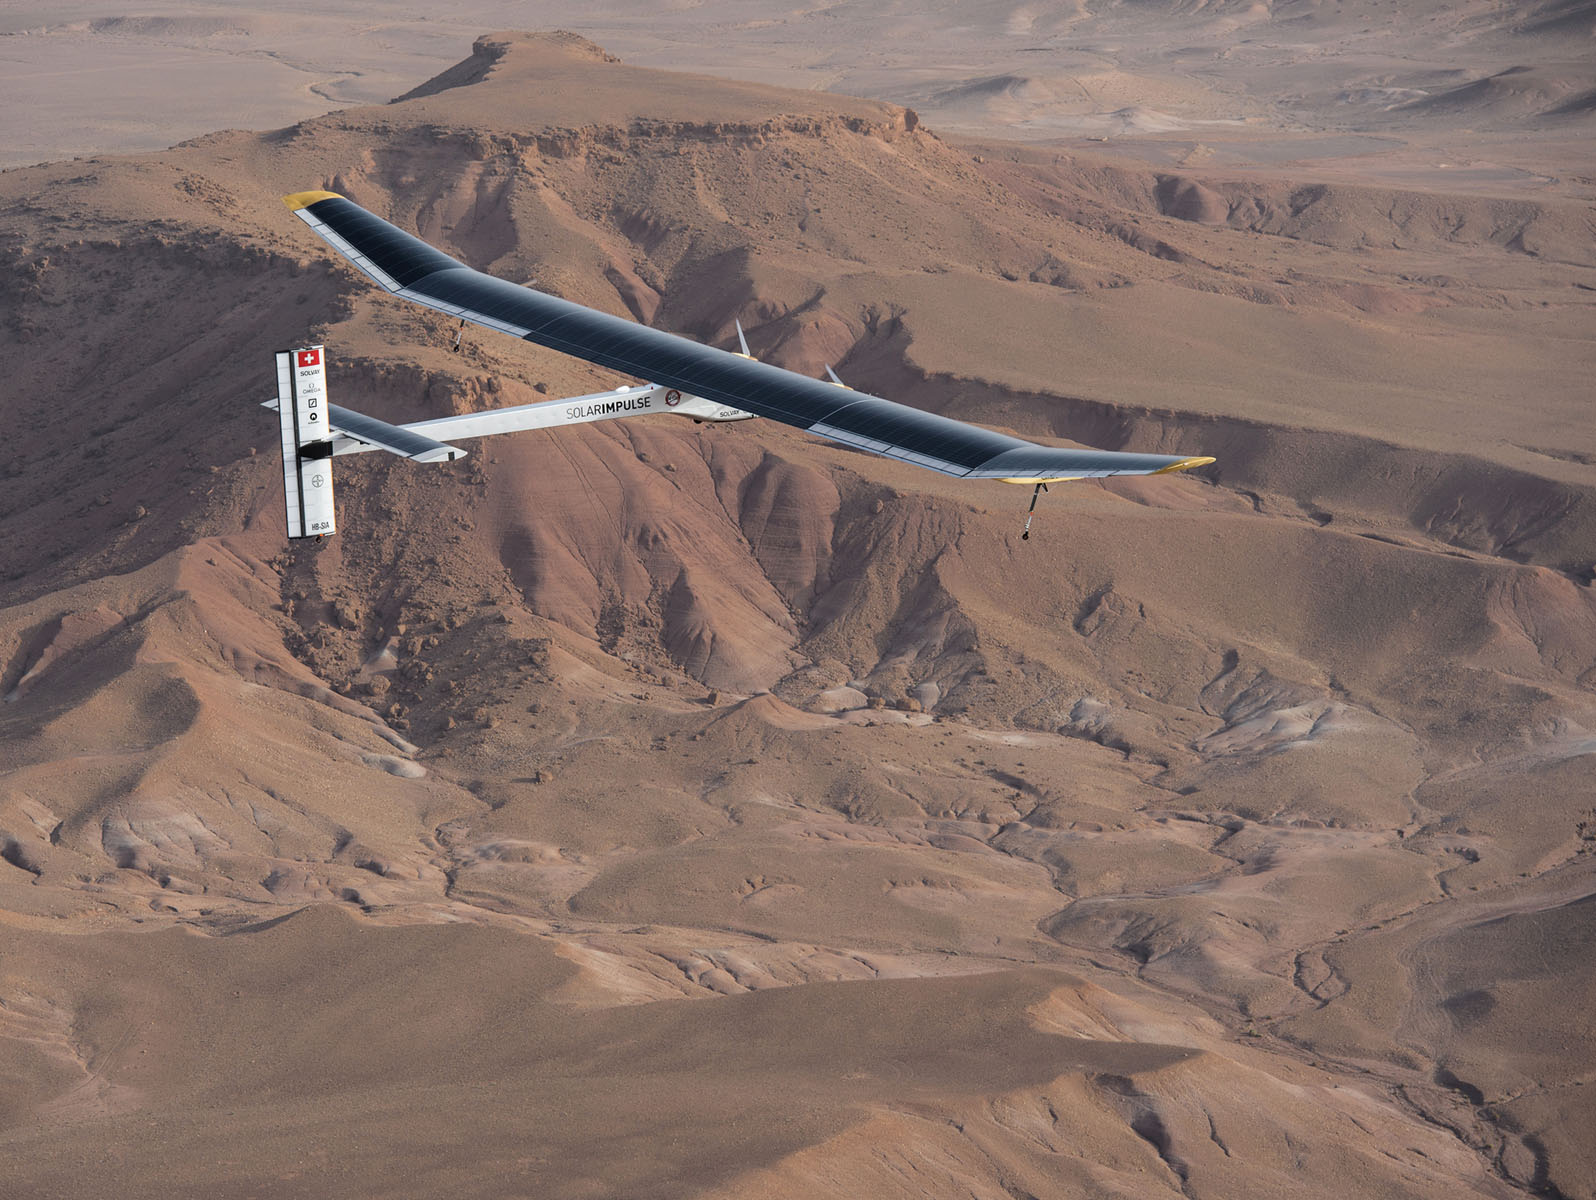 “阳光动力”号飞机翱翔于摩洛哥沙漠上空